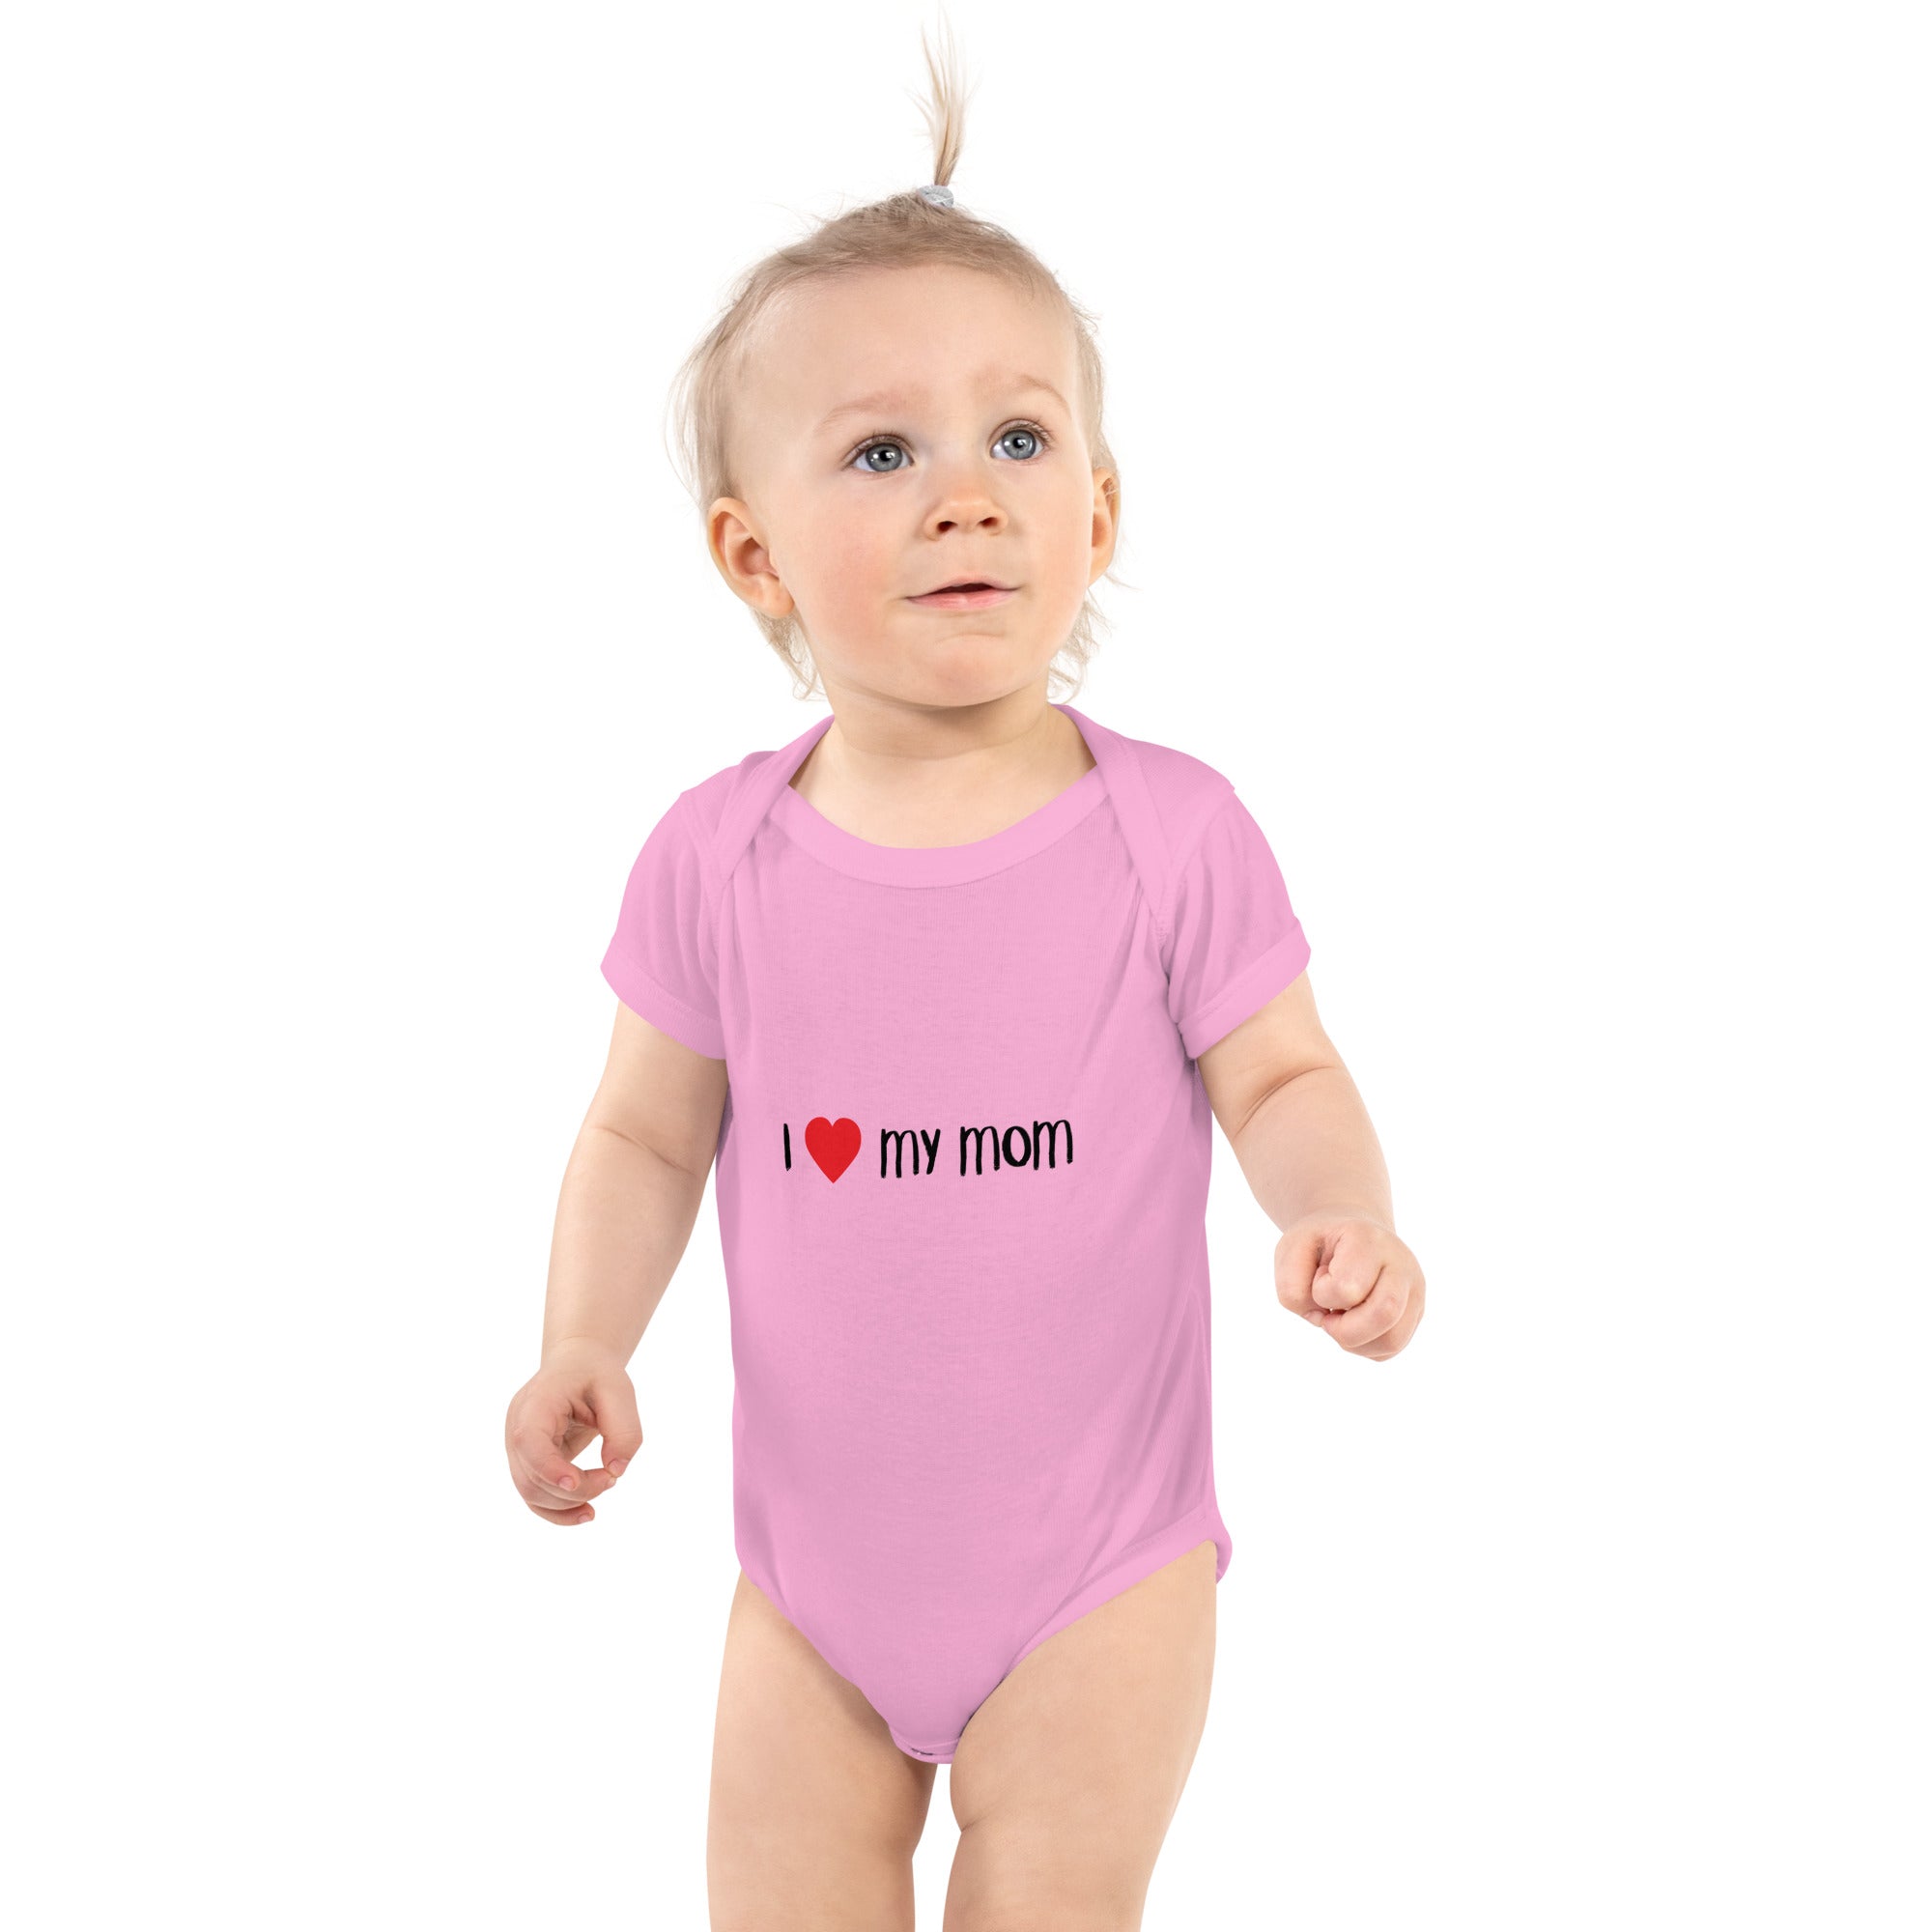 Alpscommerce Infant Bodysuit